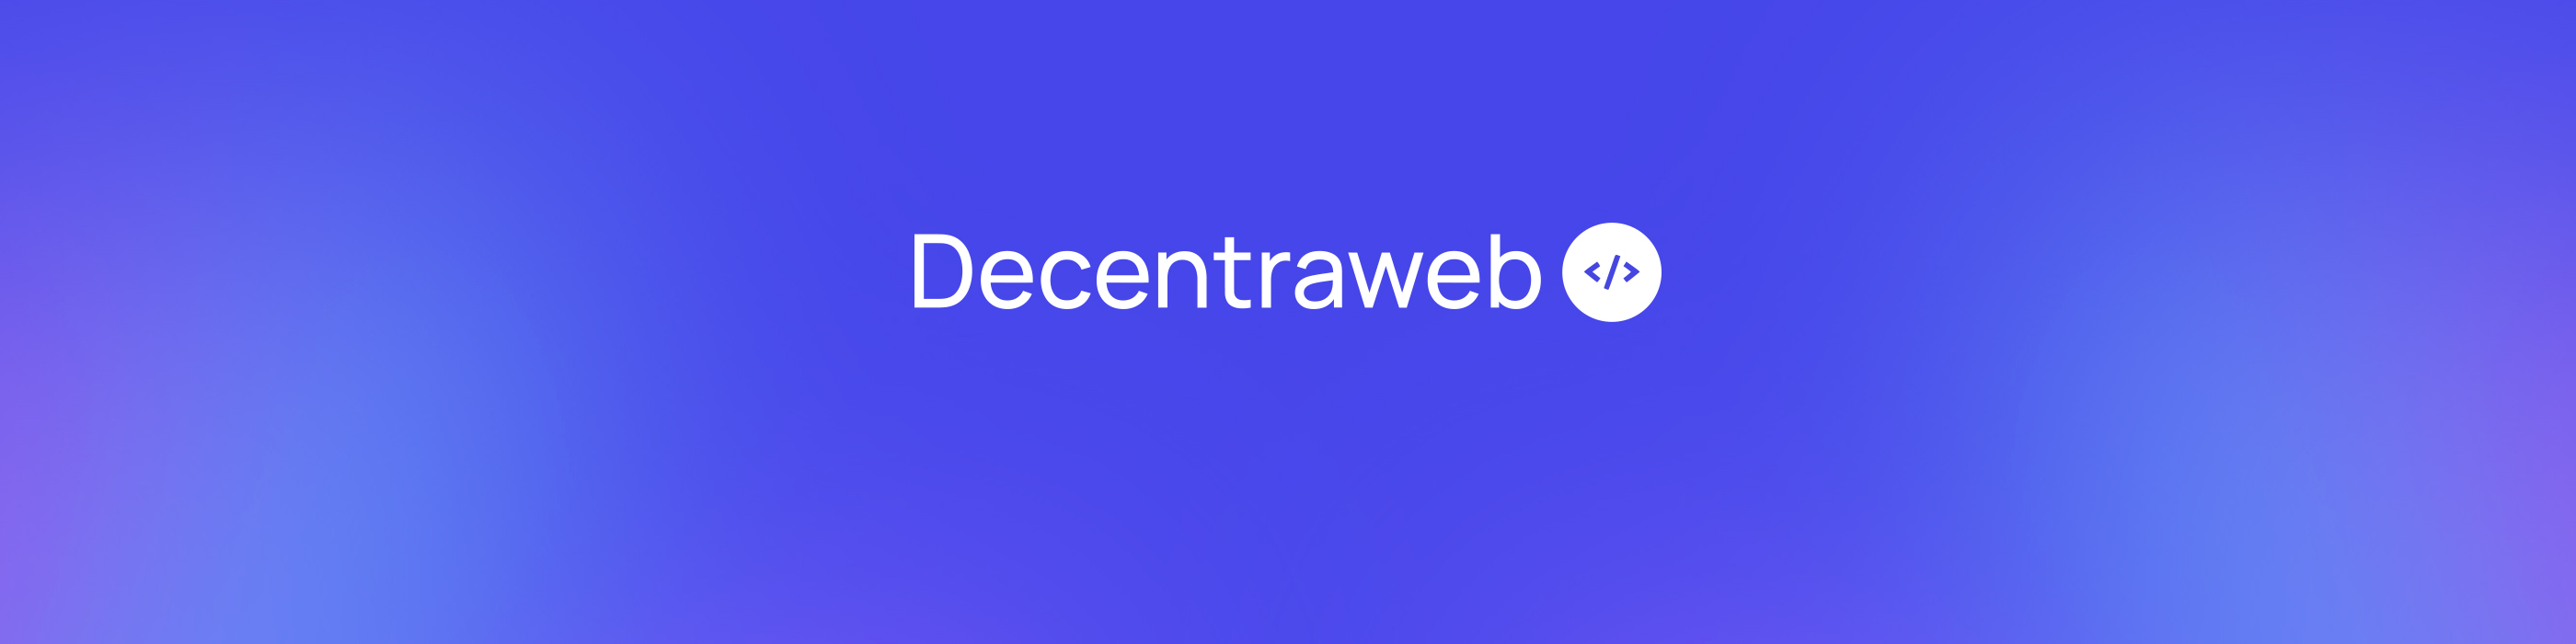 decentraweb Banner